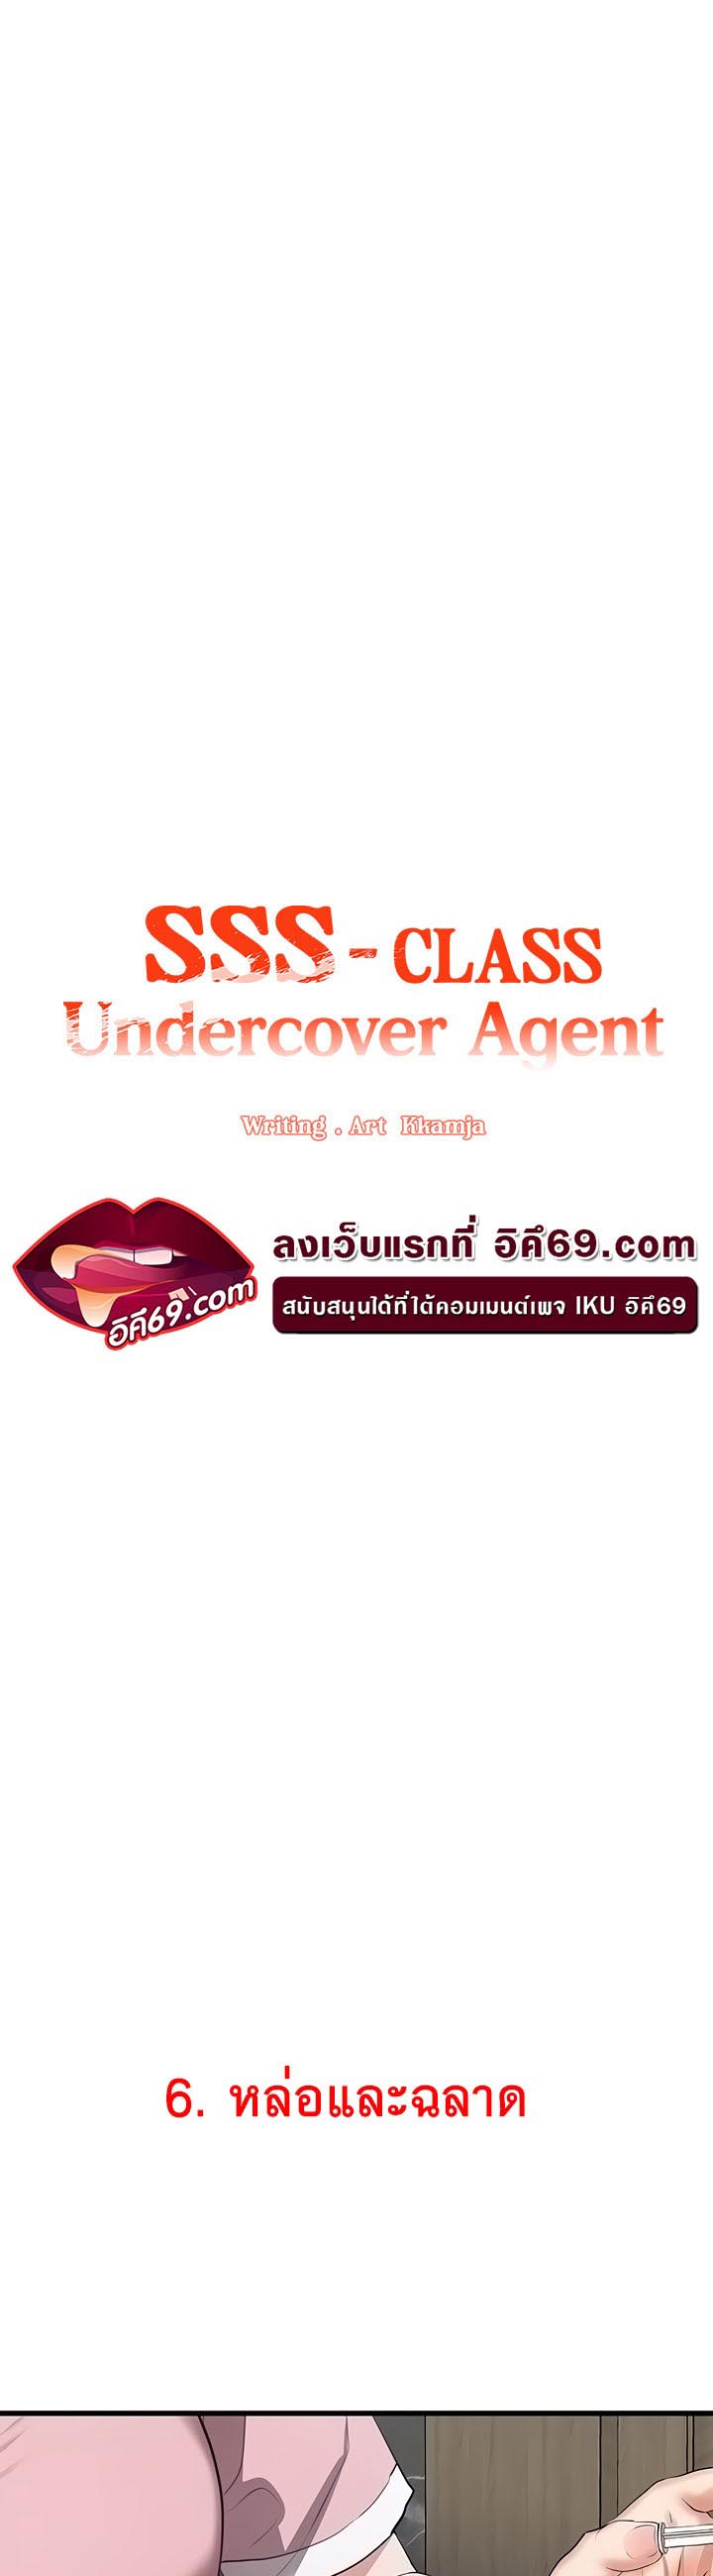 อ่านโดจิน เรื่อง SSS Class Undercover Agent 6 14